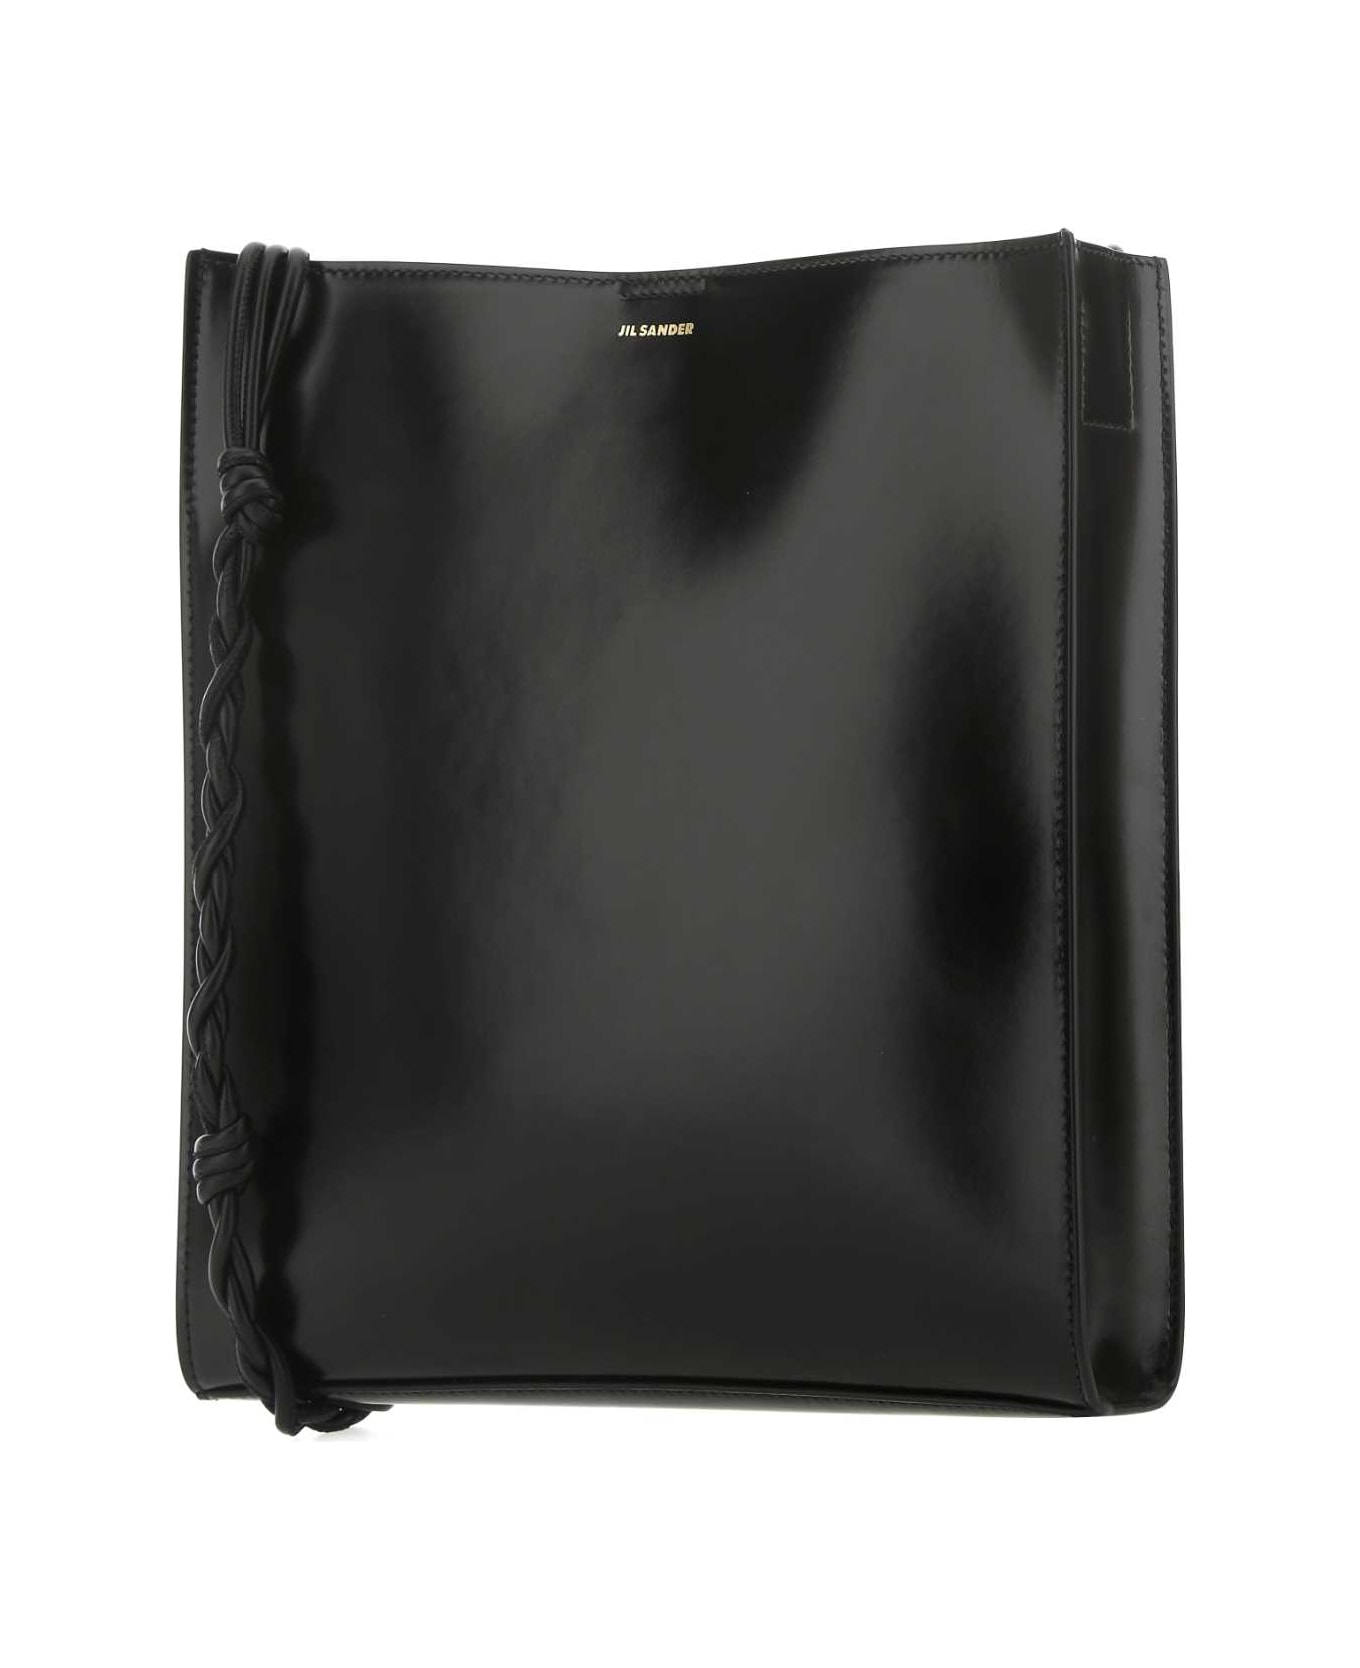 Jil Sander Black Leather Large Tangle Shoulder Bag - 001